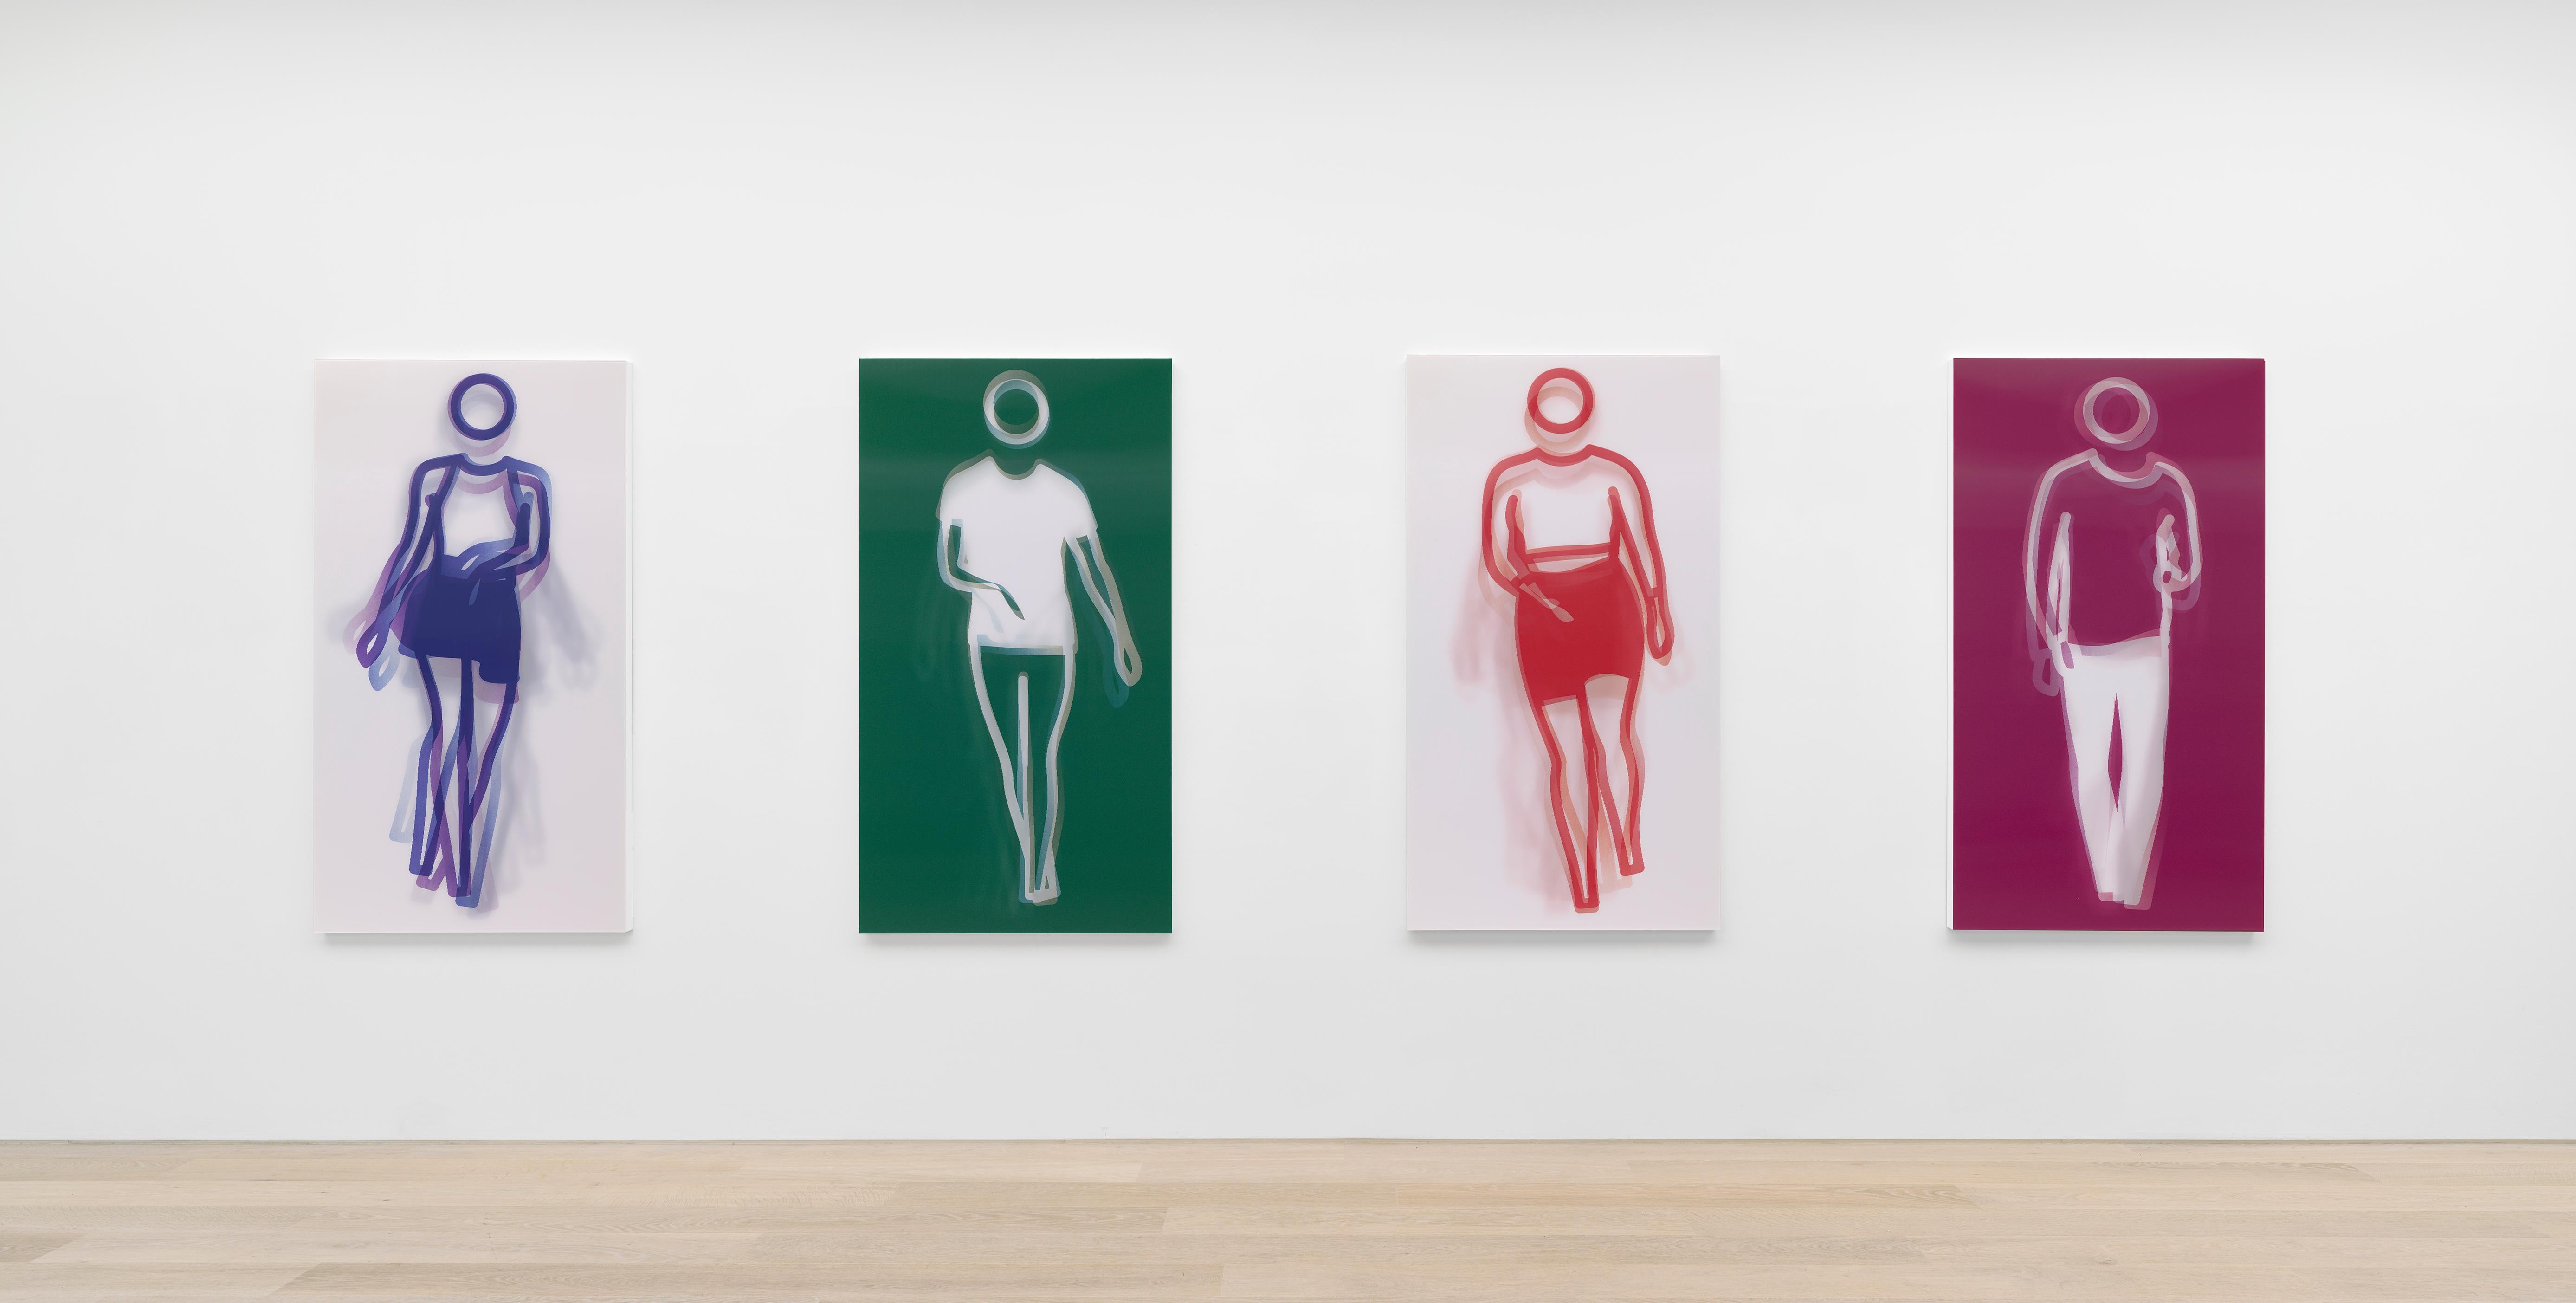 Moving Large Contemporary Acrylic Panel of Dancing Figure, Four Colors, Dance 2 (panneau acrylique contemporain de grande taille représentant une figure dansante) - Print de Julian Opie